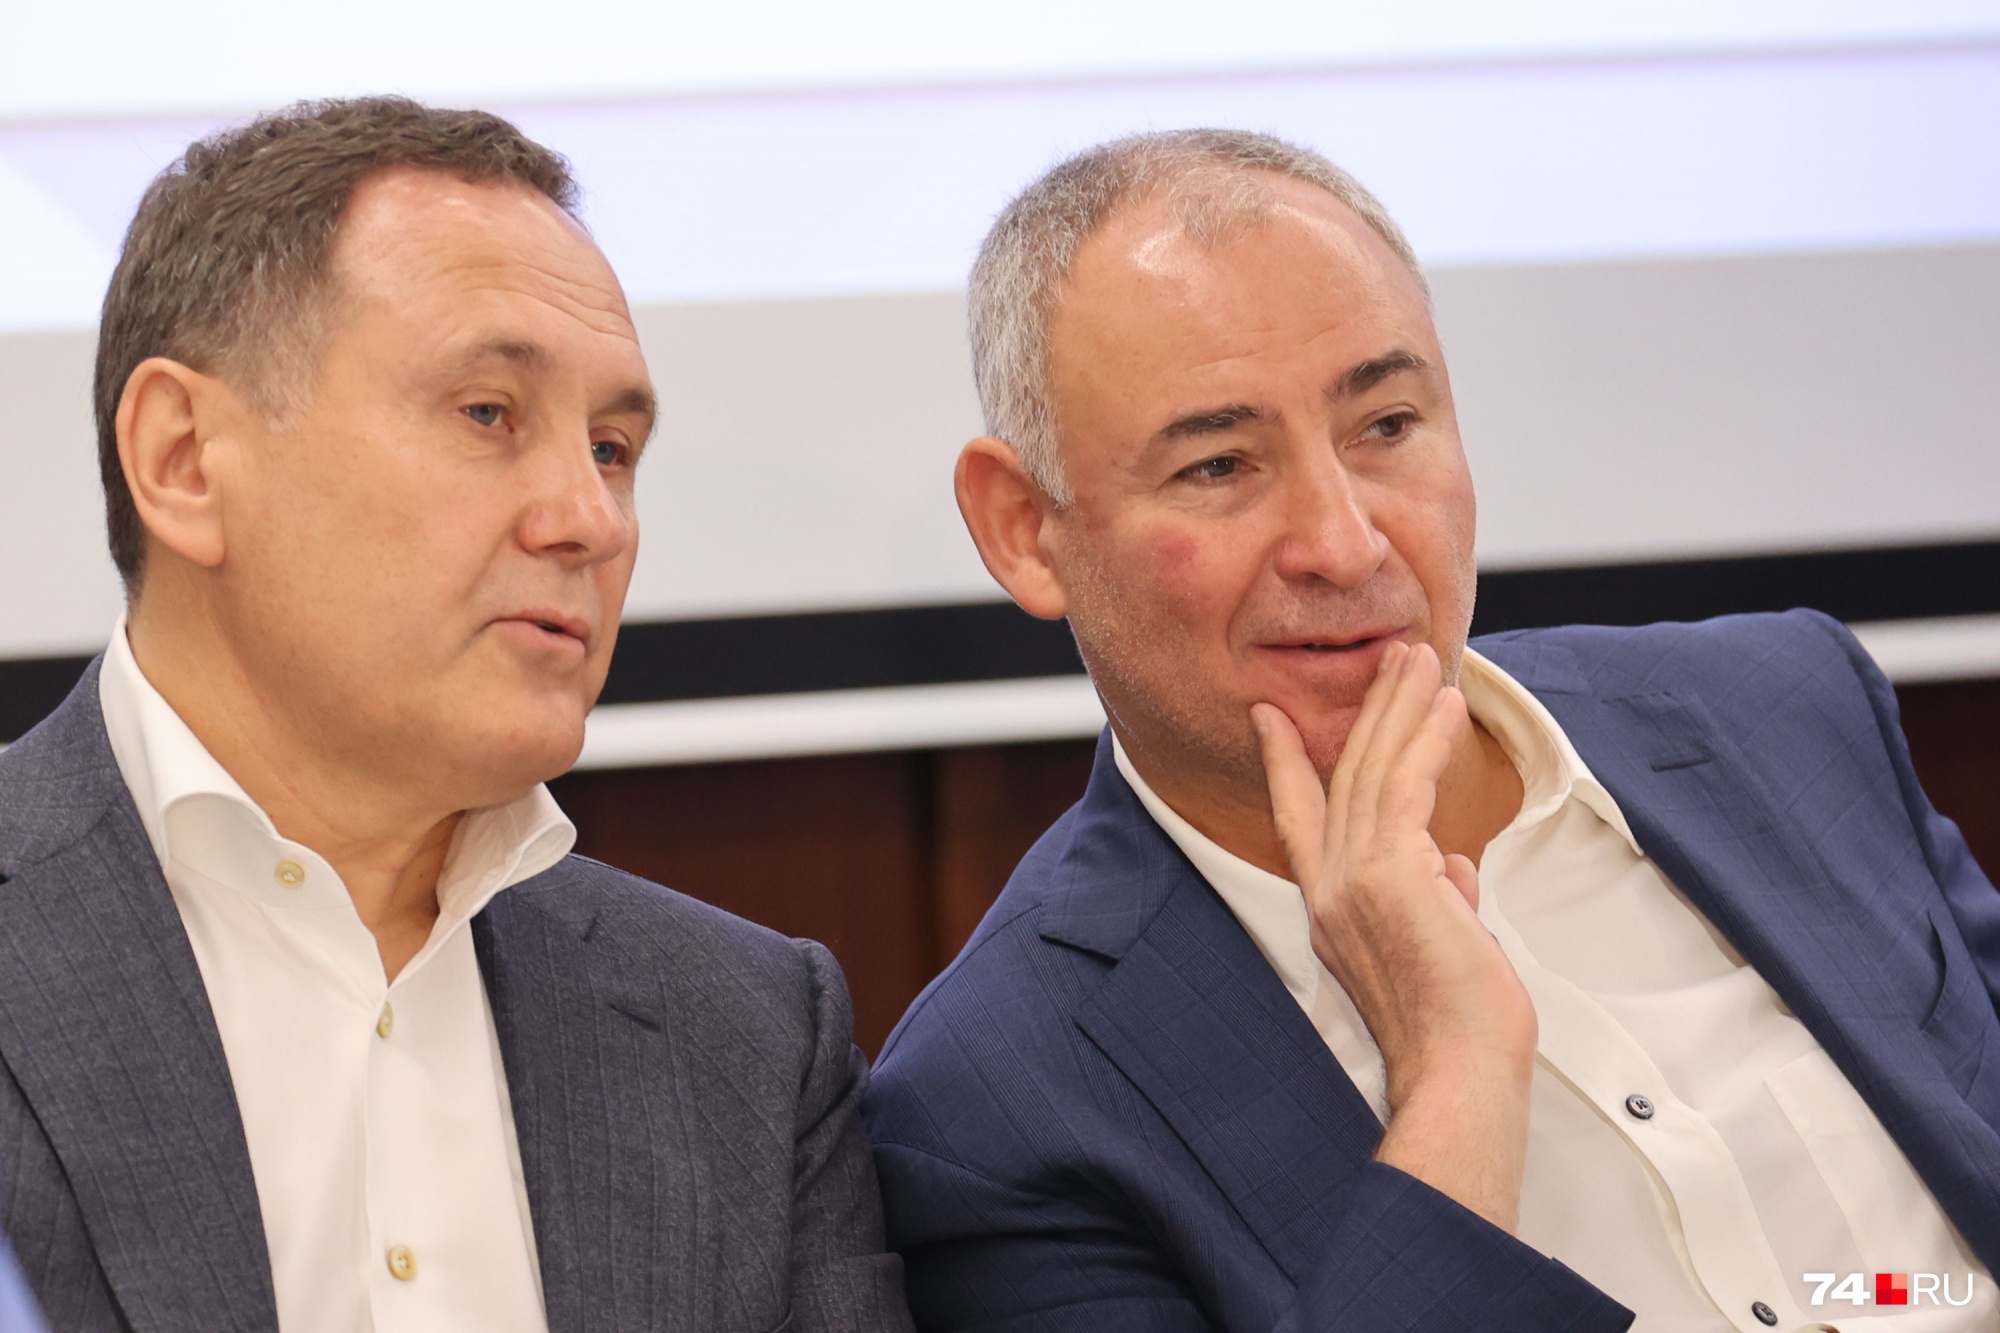 Владелец Промышленной группы «КОНАР» Валерий Бондаренко и президент холдинга «Бовид» Борис Видгоф нашли приятный повод для беседы